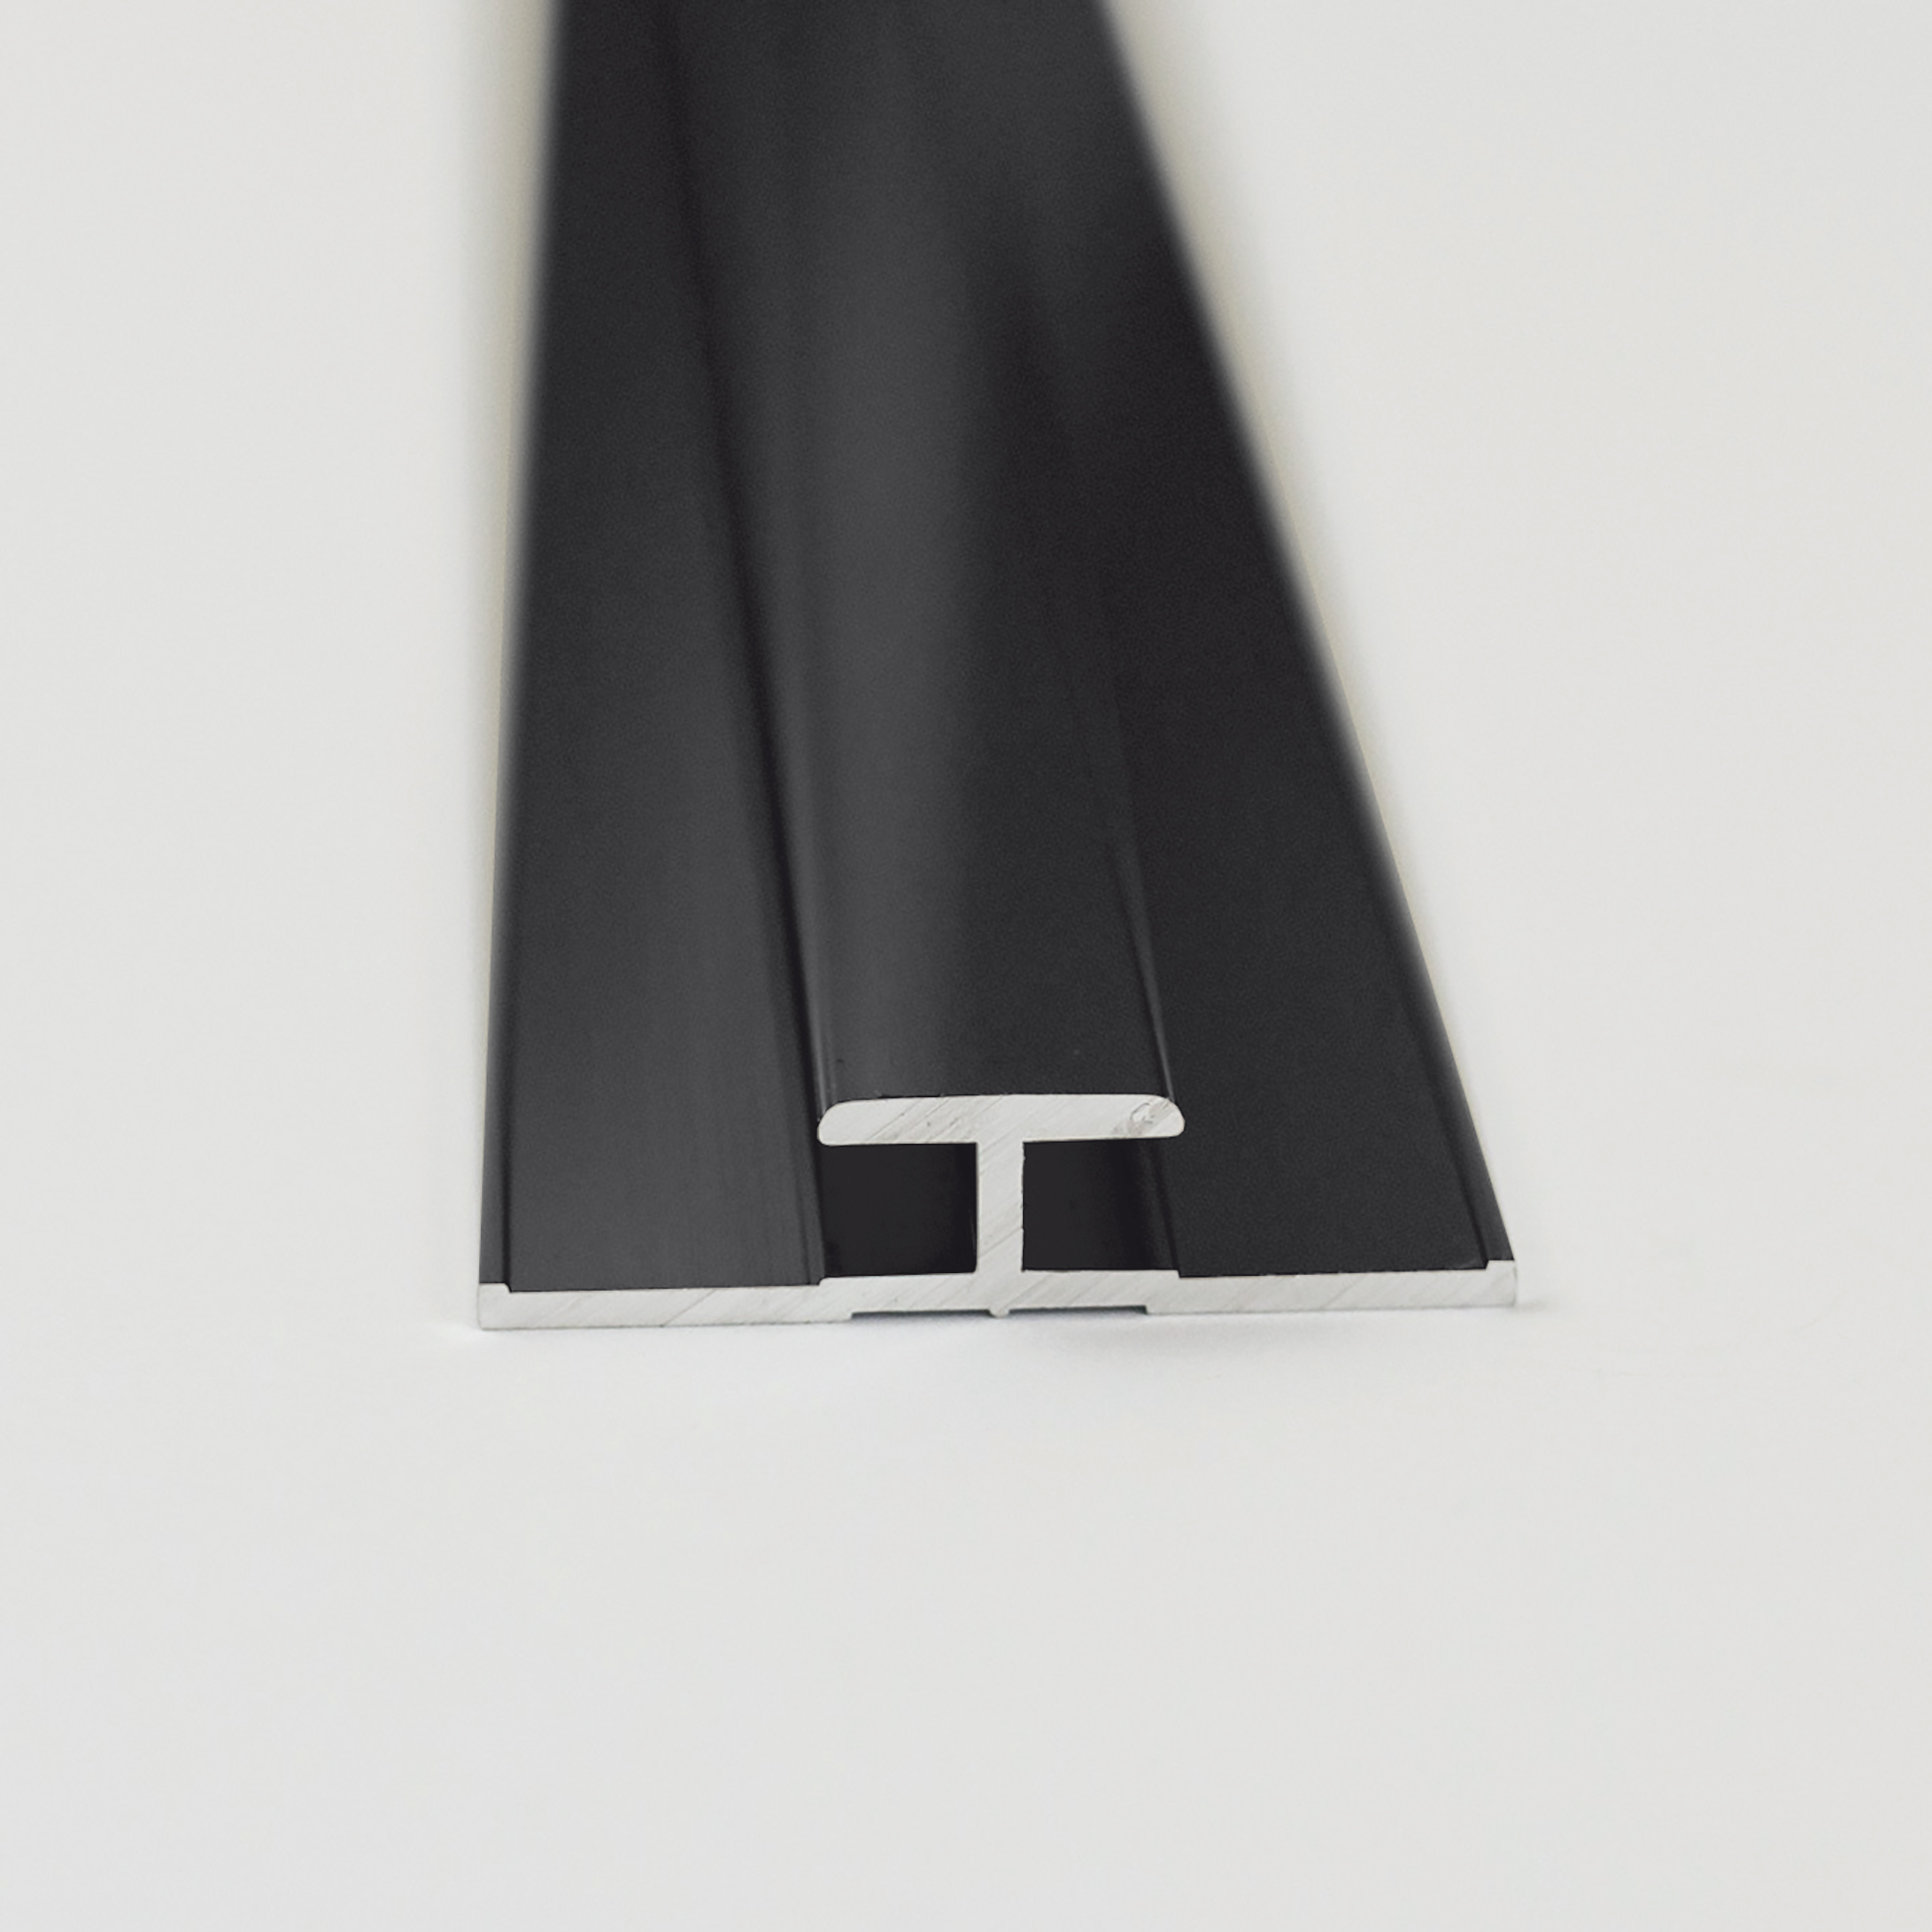 Verbindungsprofil für Rückwandplatten, schwarz matt, 2100 mm + product picture